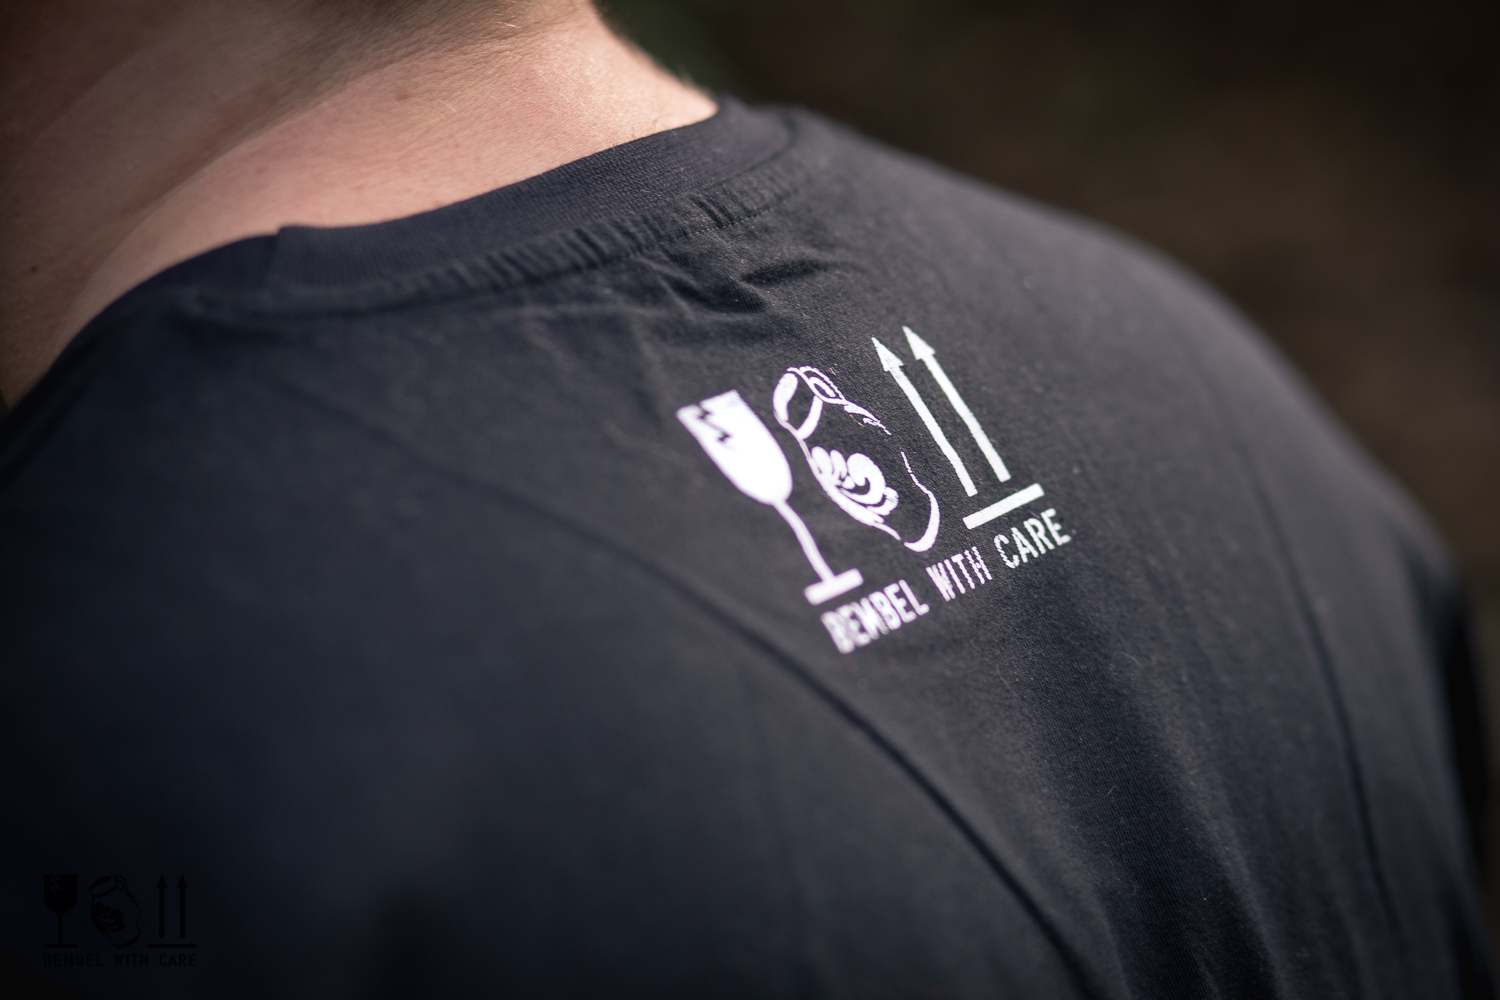 BEMBEL-WITH-CARE T-Shirt BEM|BEL Detail Nacken-Aufdruck, Apfelwein, Cider